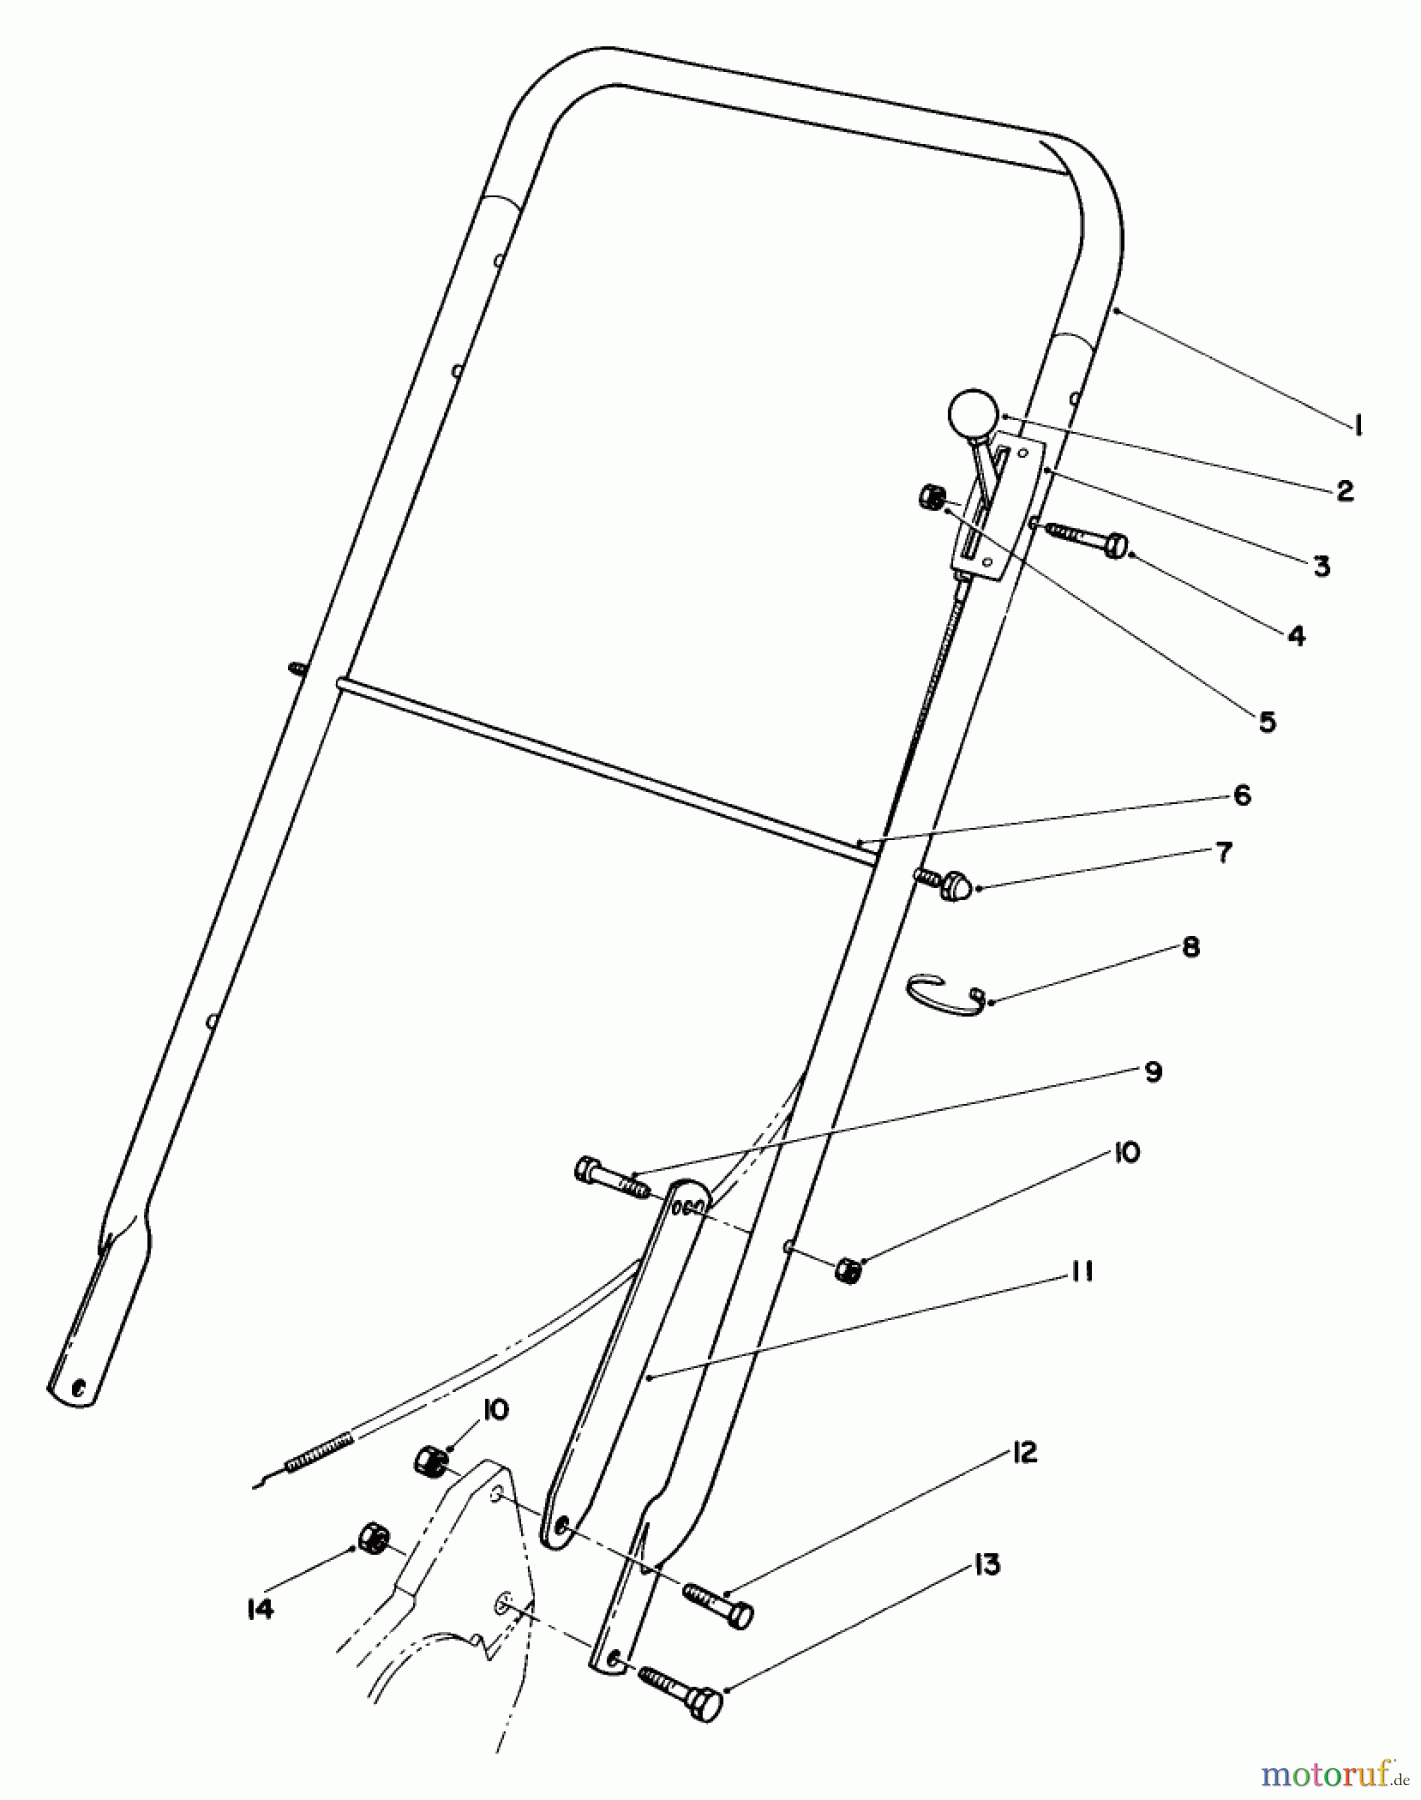  Toro Neu Mowers, Walk-Behind Seite 2 22035 - Toro Lawnmower, 1987 (7000001-7999999) HANDLE ASSEMBLY (MODEL 22030)